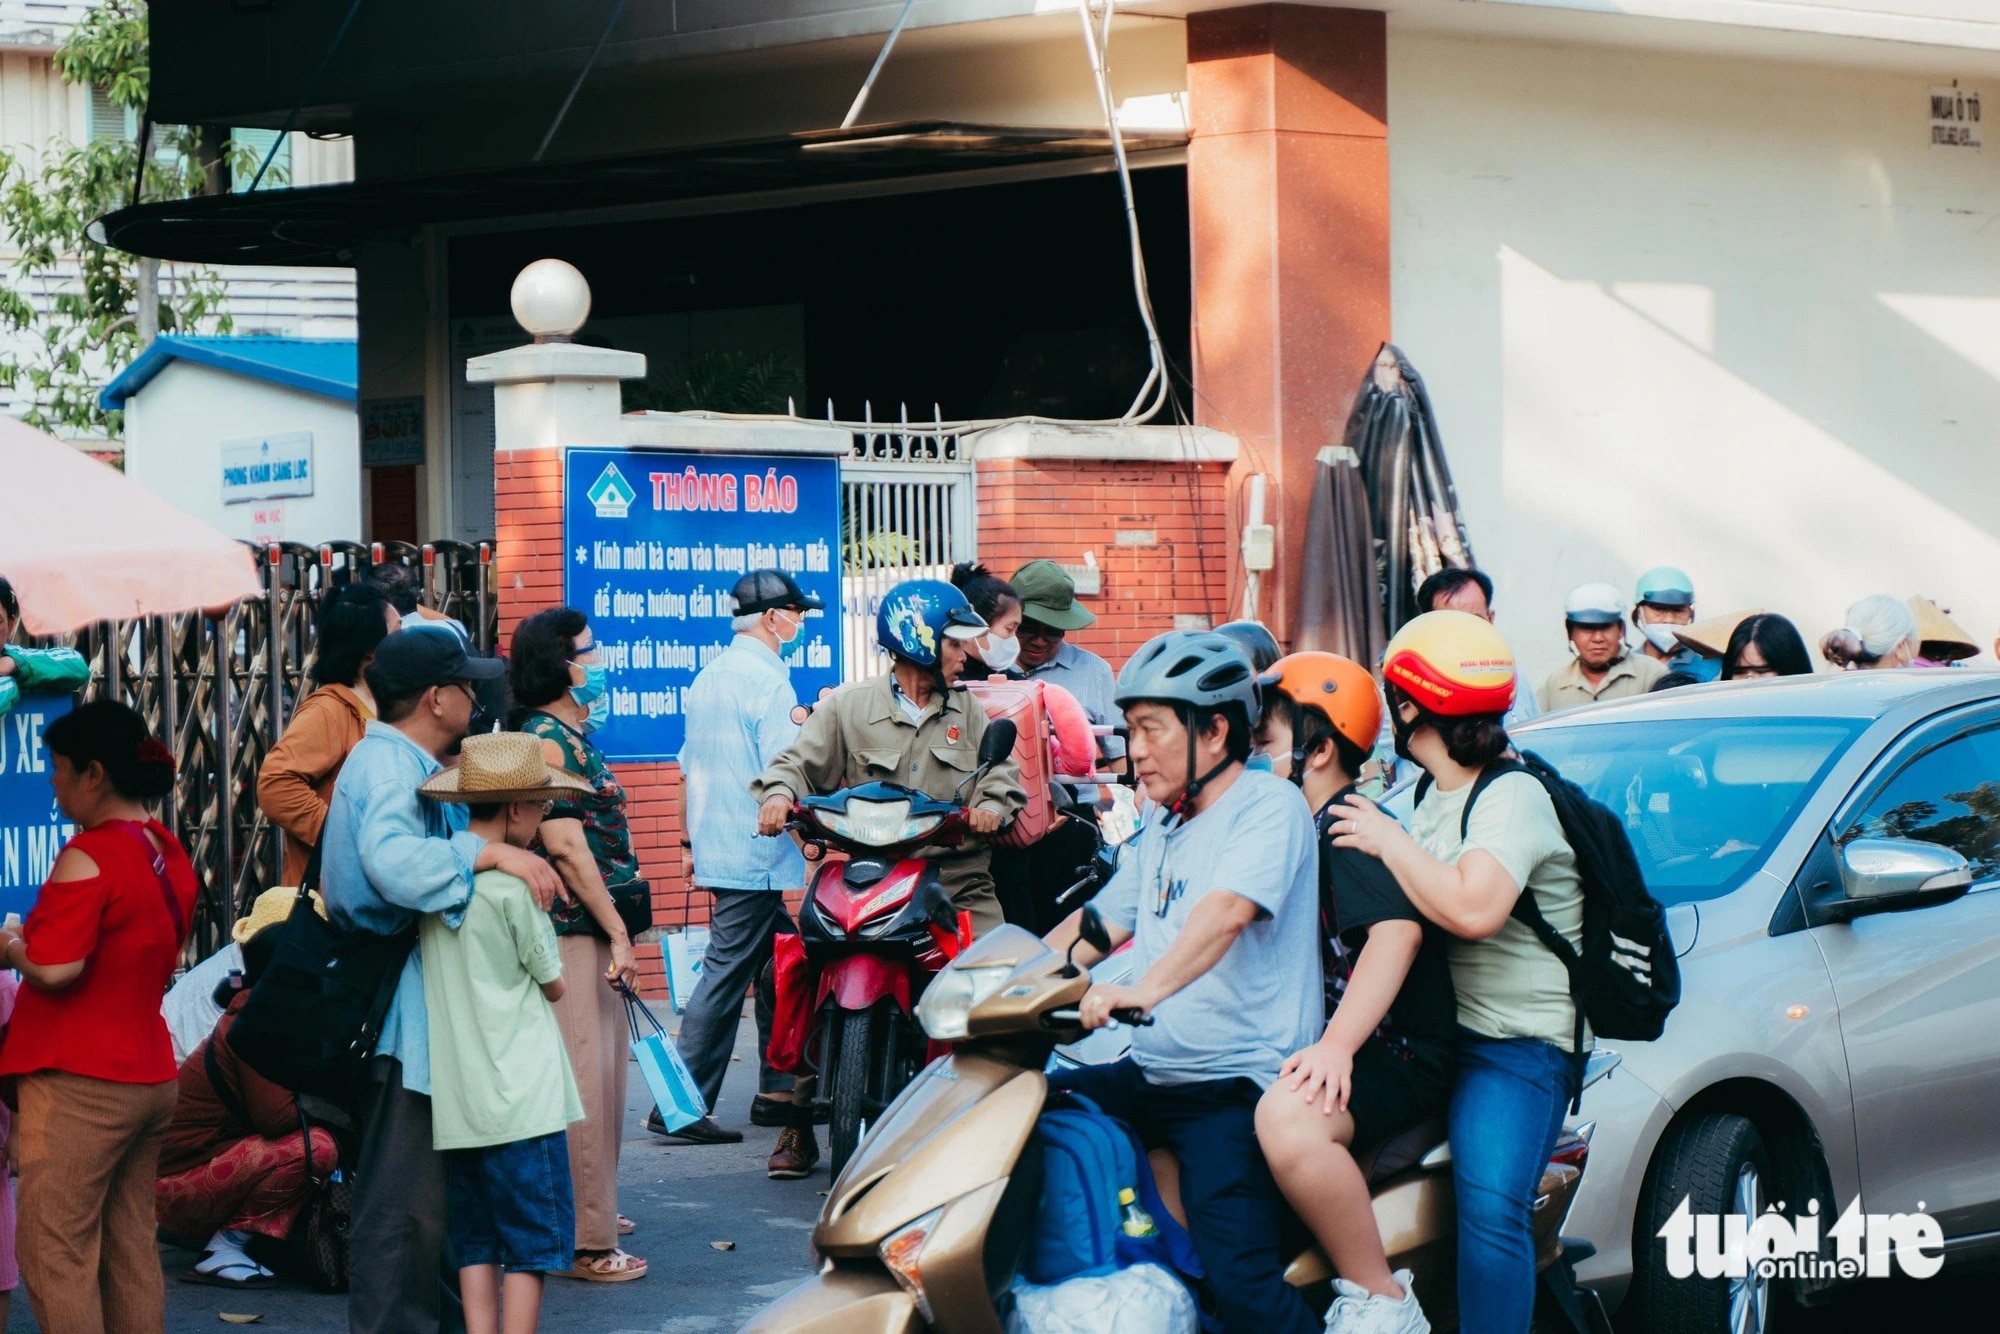 Cổng số 2 (đường Nguyễn Thông, quận 3) Bệnh viện mắt TP.HCM thường xuyên xảy ra tình trạng kẹt xe do xe taxi không có chỗ để đón bệnh nhân mà phải dừng đậu trước cổng bệnh viện - Ảnh: THANH HIỆP